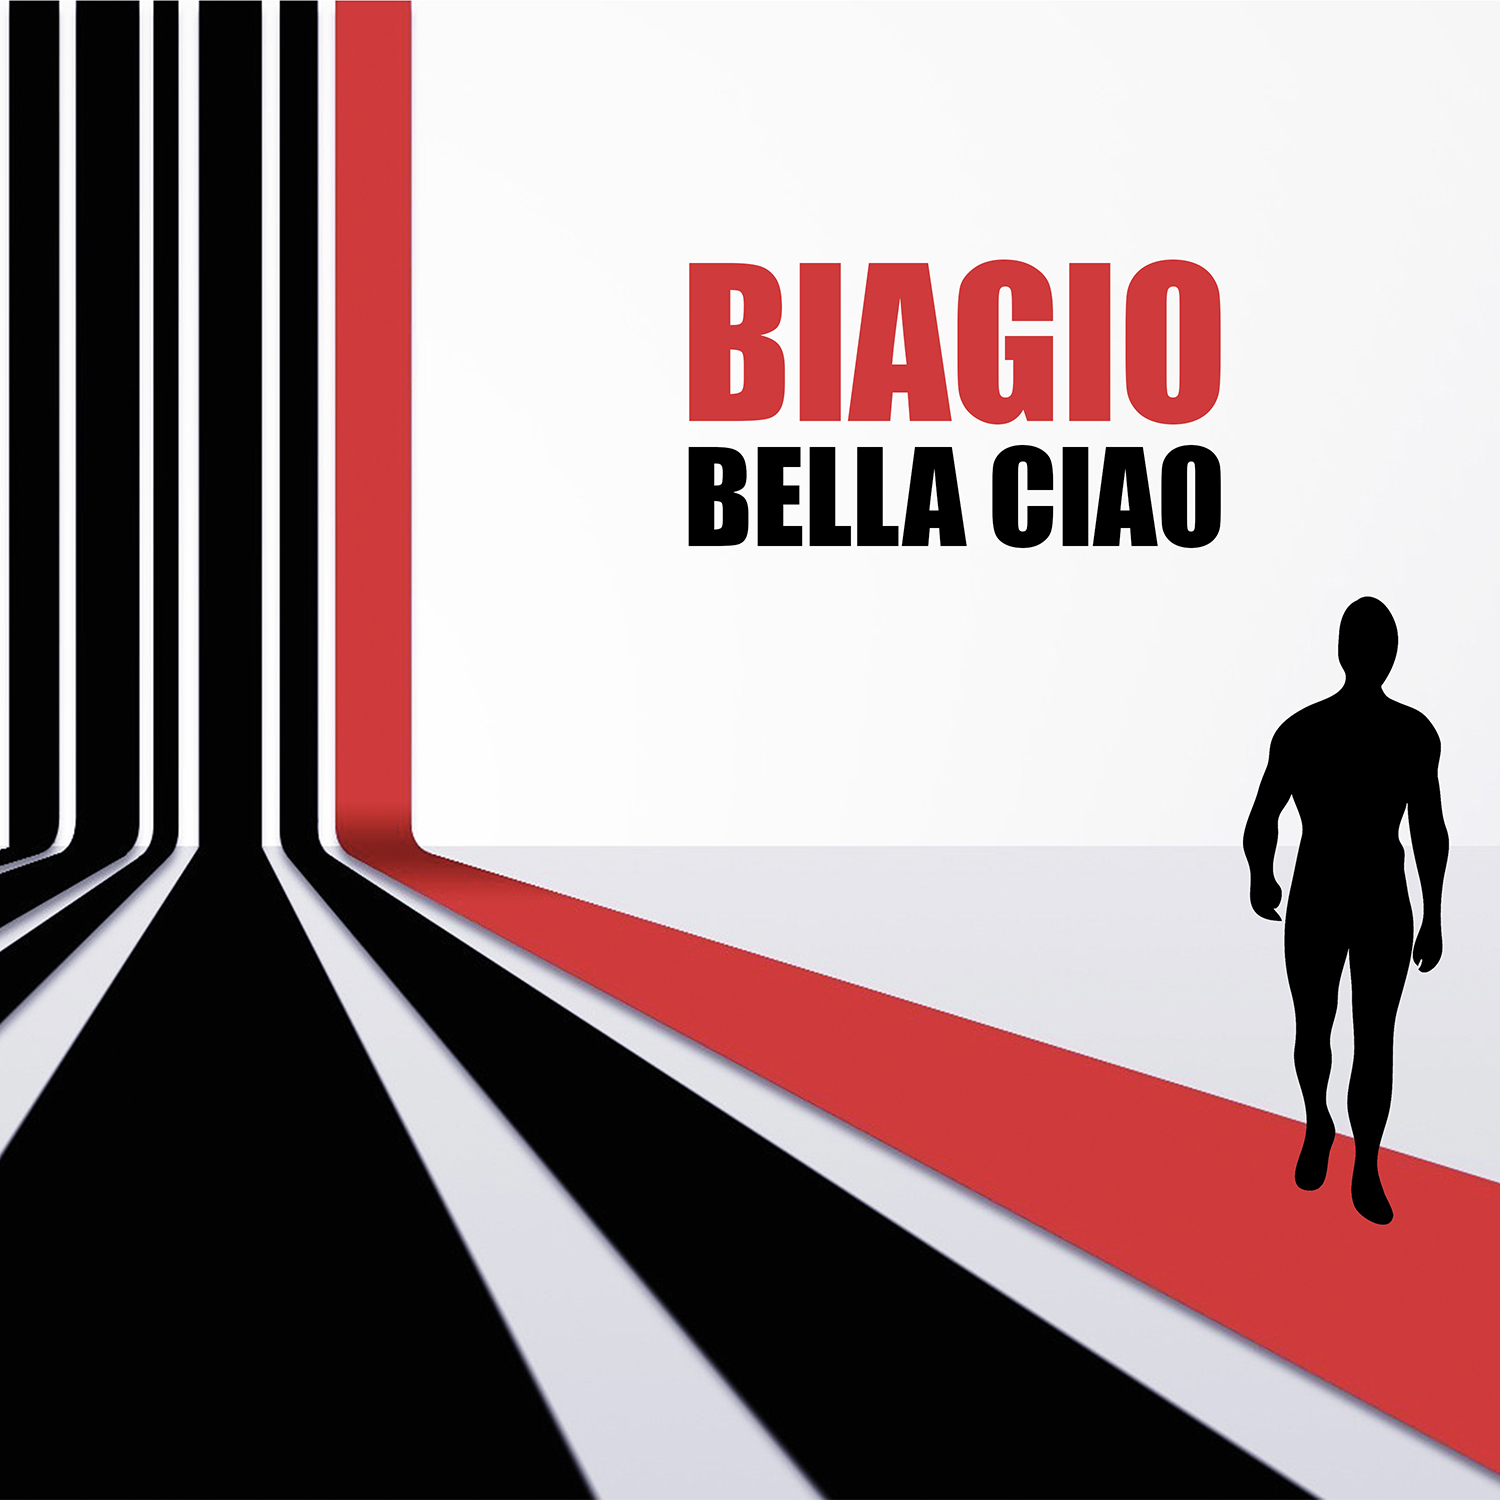 Biagio - Bella Ciao - Cover Art